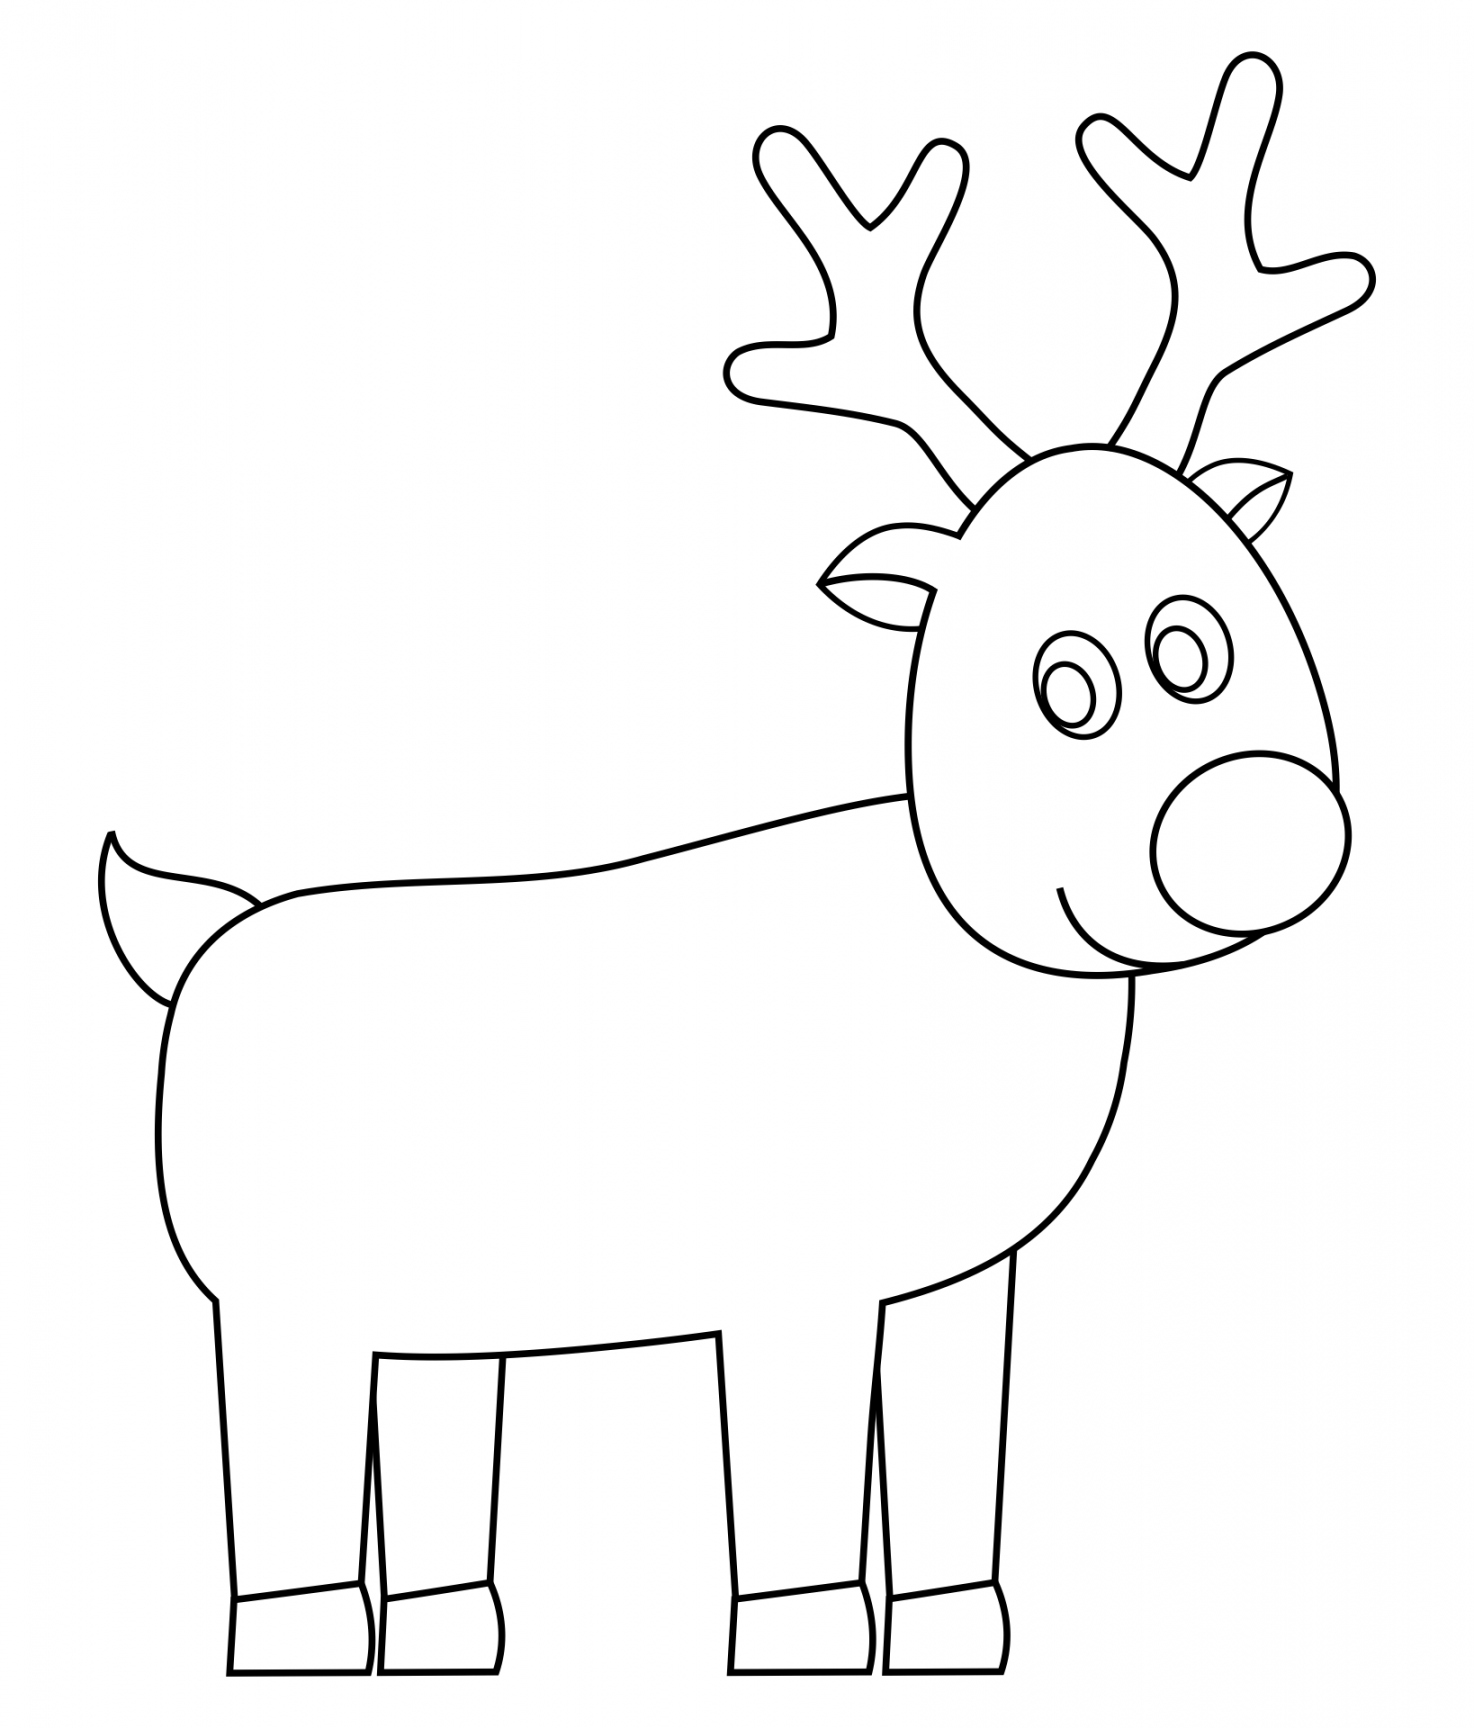 Best Reindeer Free Printable Faces - printablee - Printable Reindeer Template